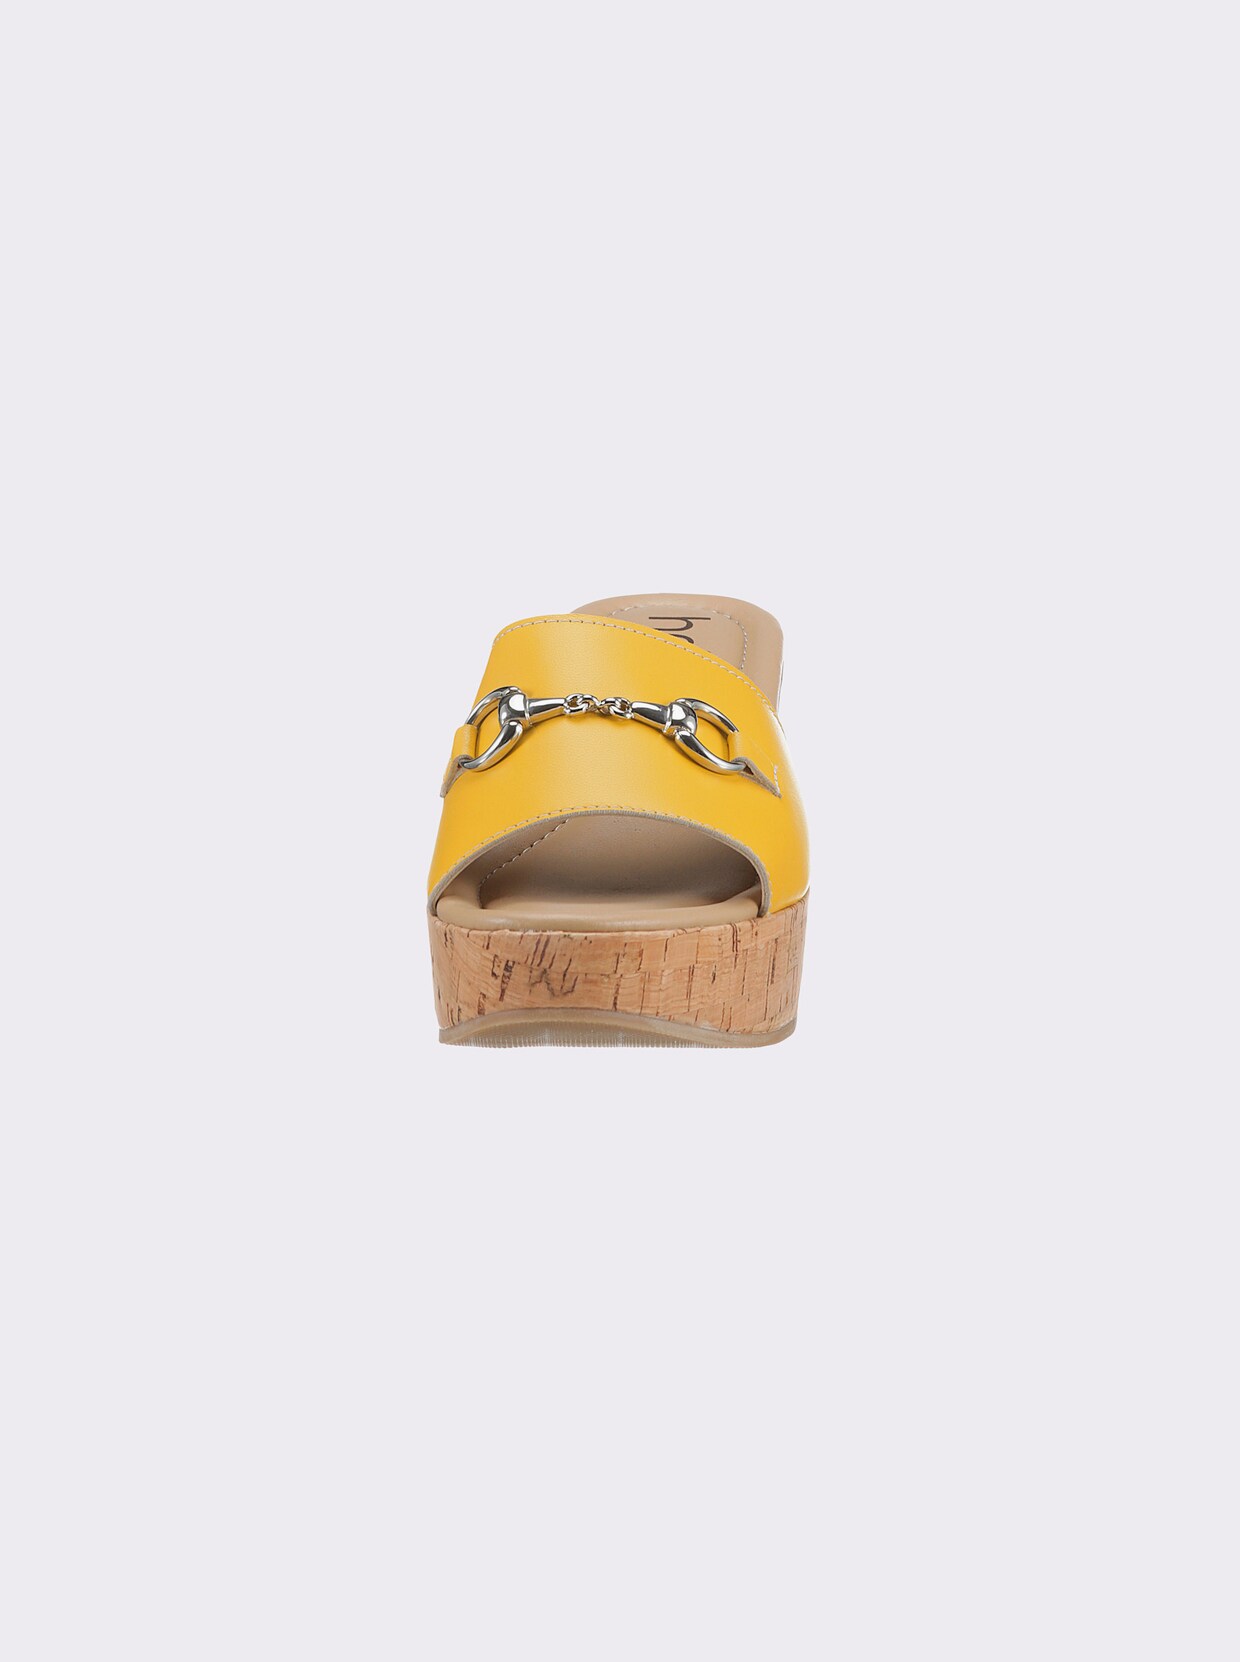 heine slippers - geel